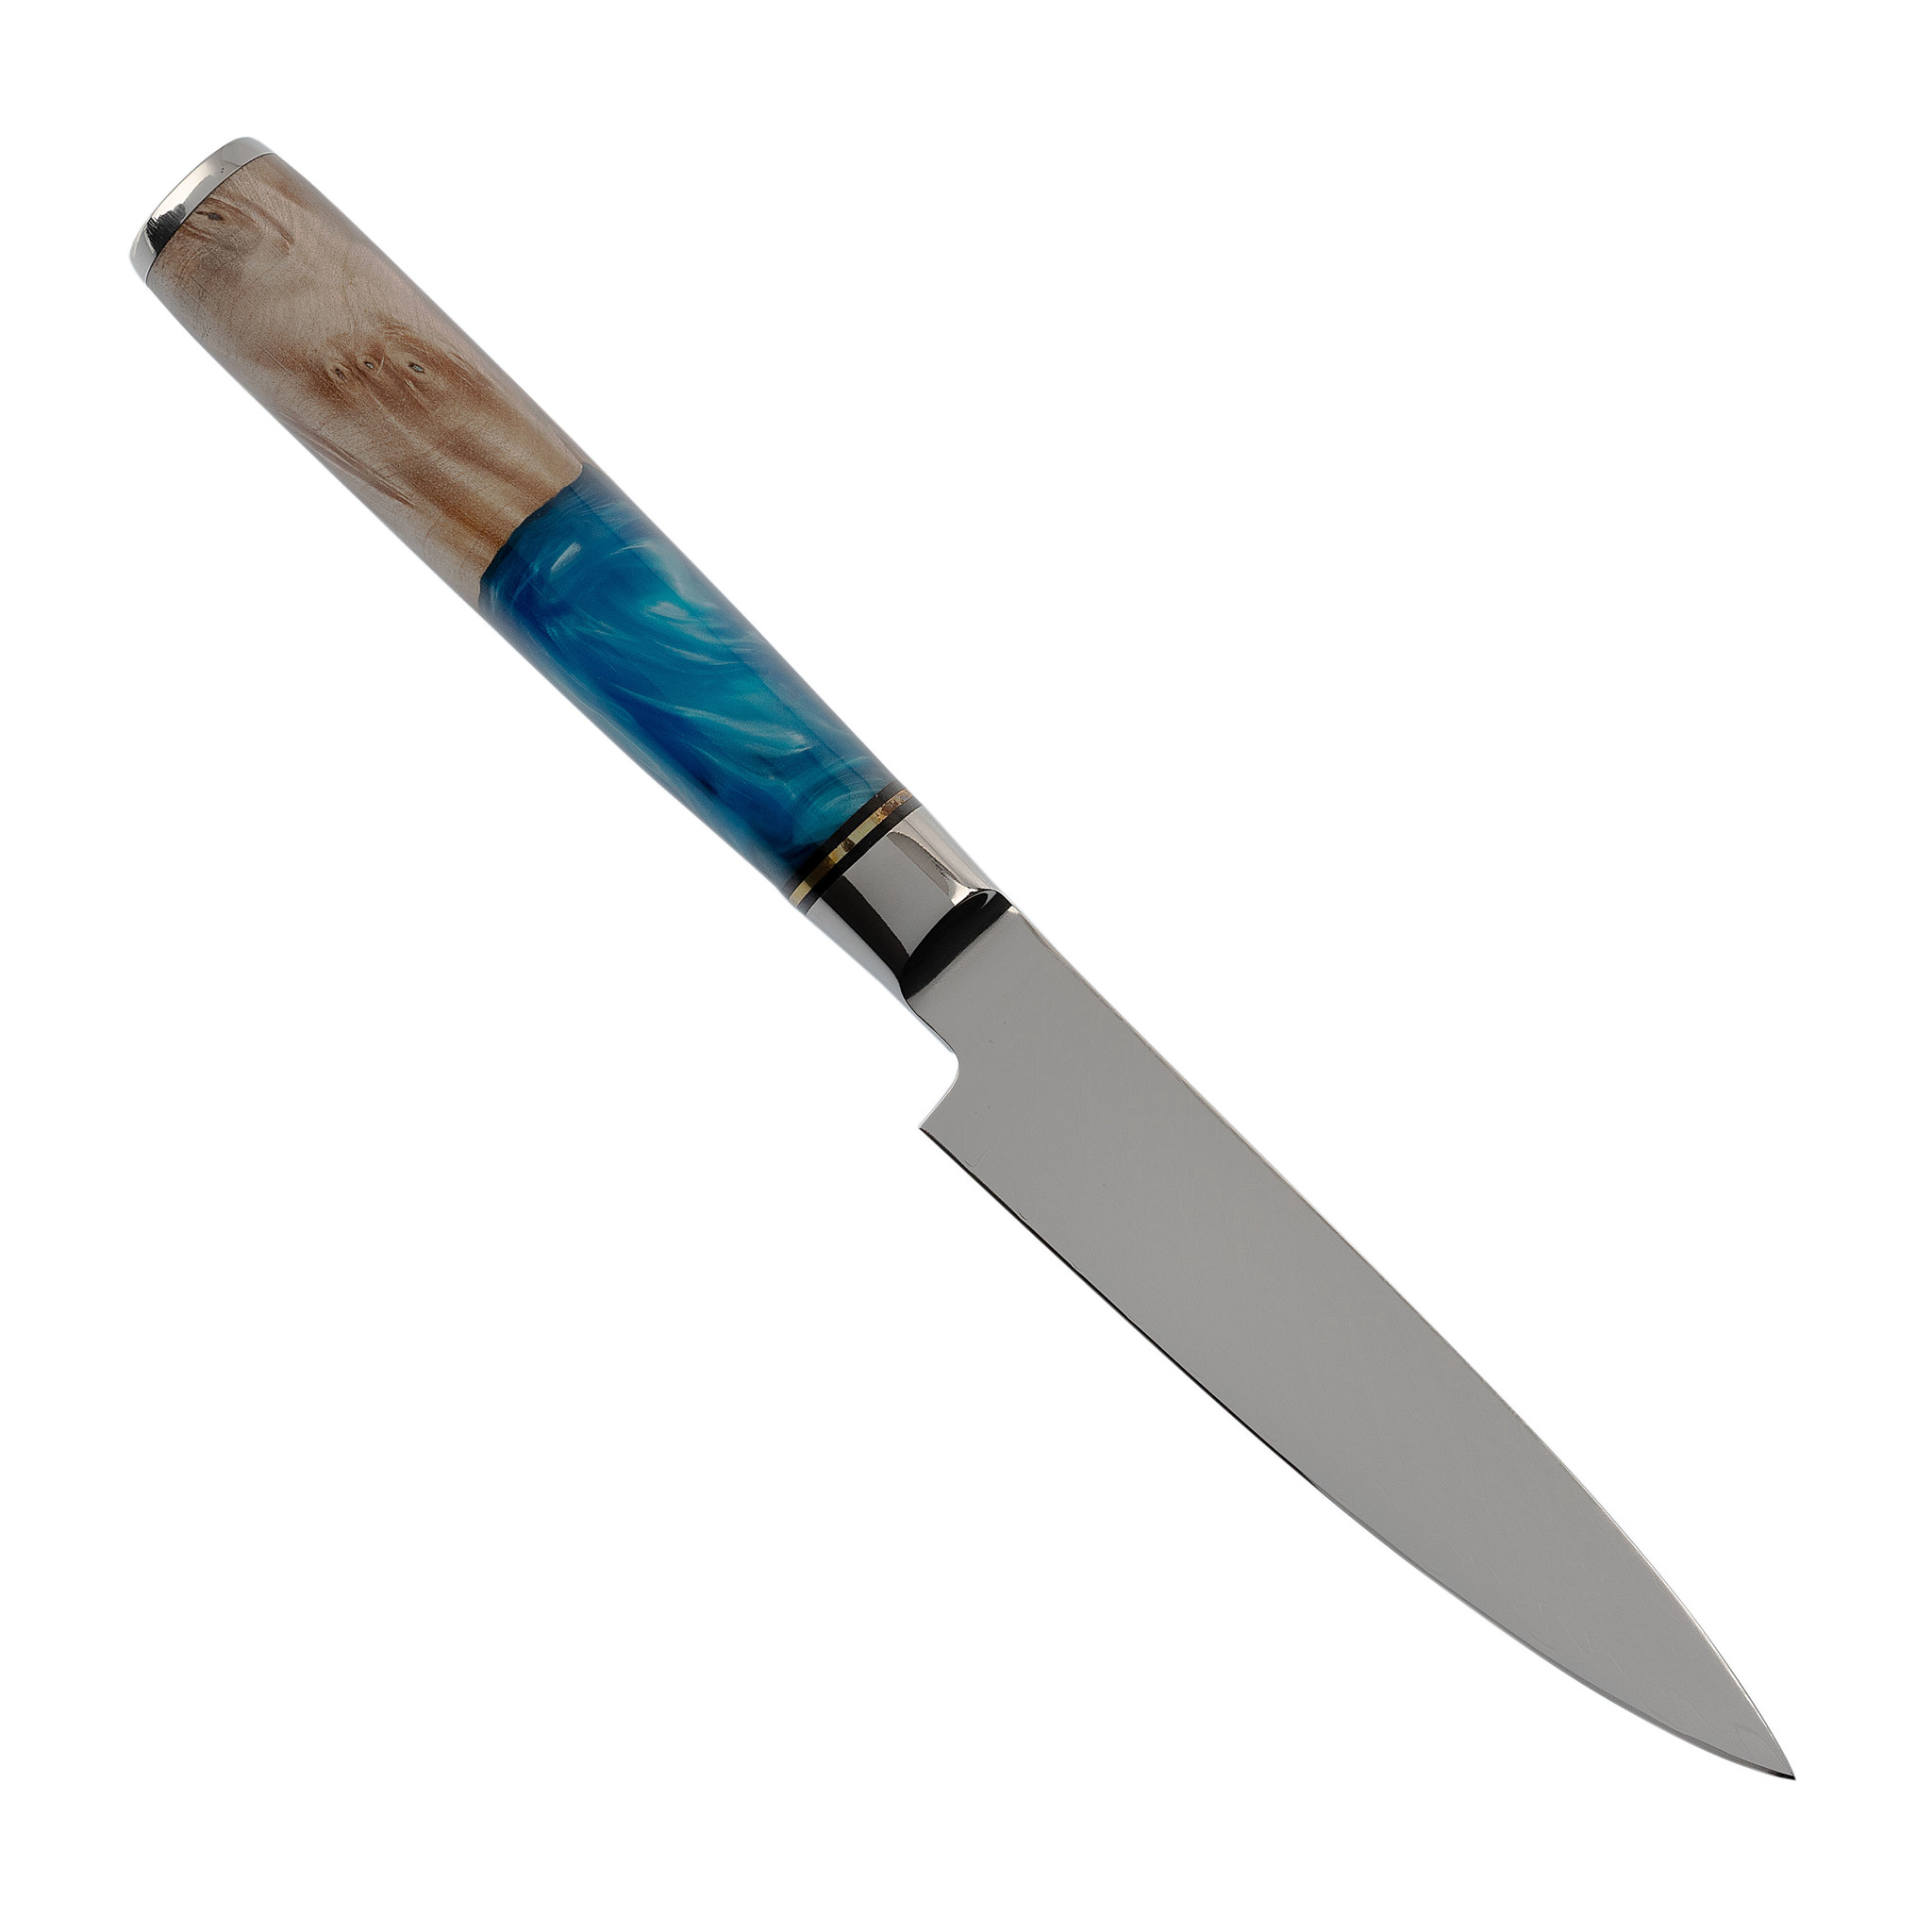 Кухонный универсальный нож Tuotown TWB-D3, сталь VG-10, рукоять дерево/эпоксидка - фото 3